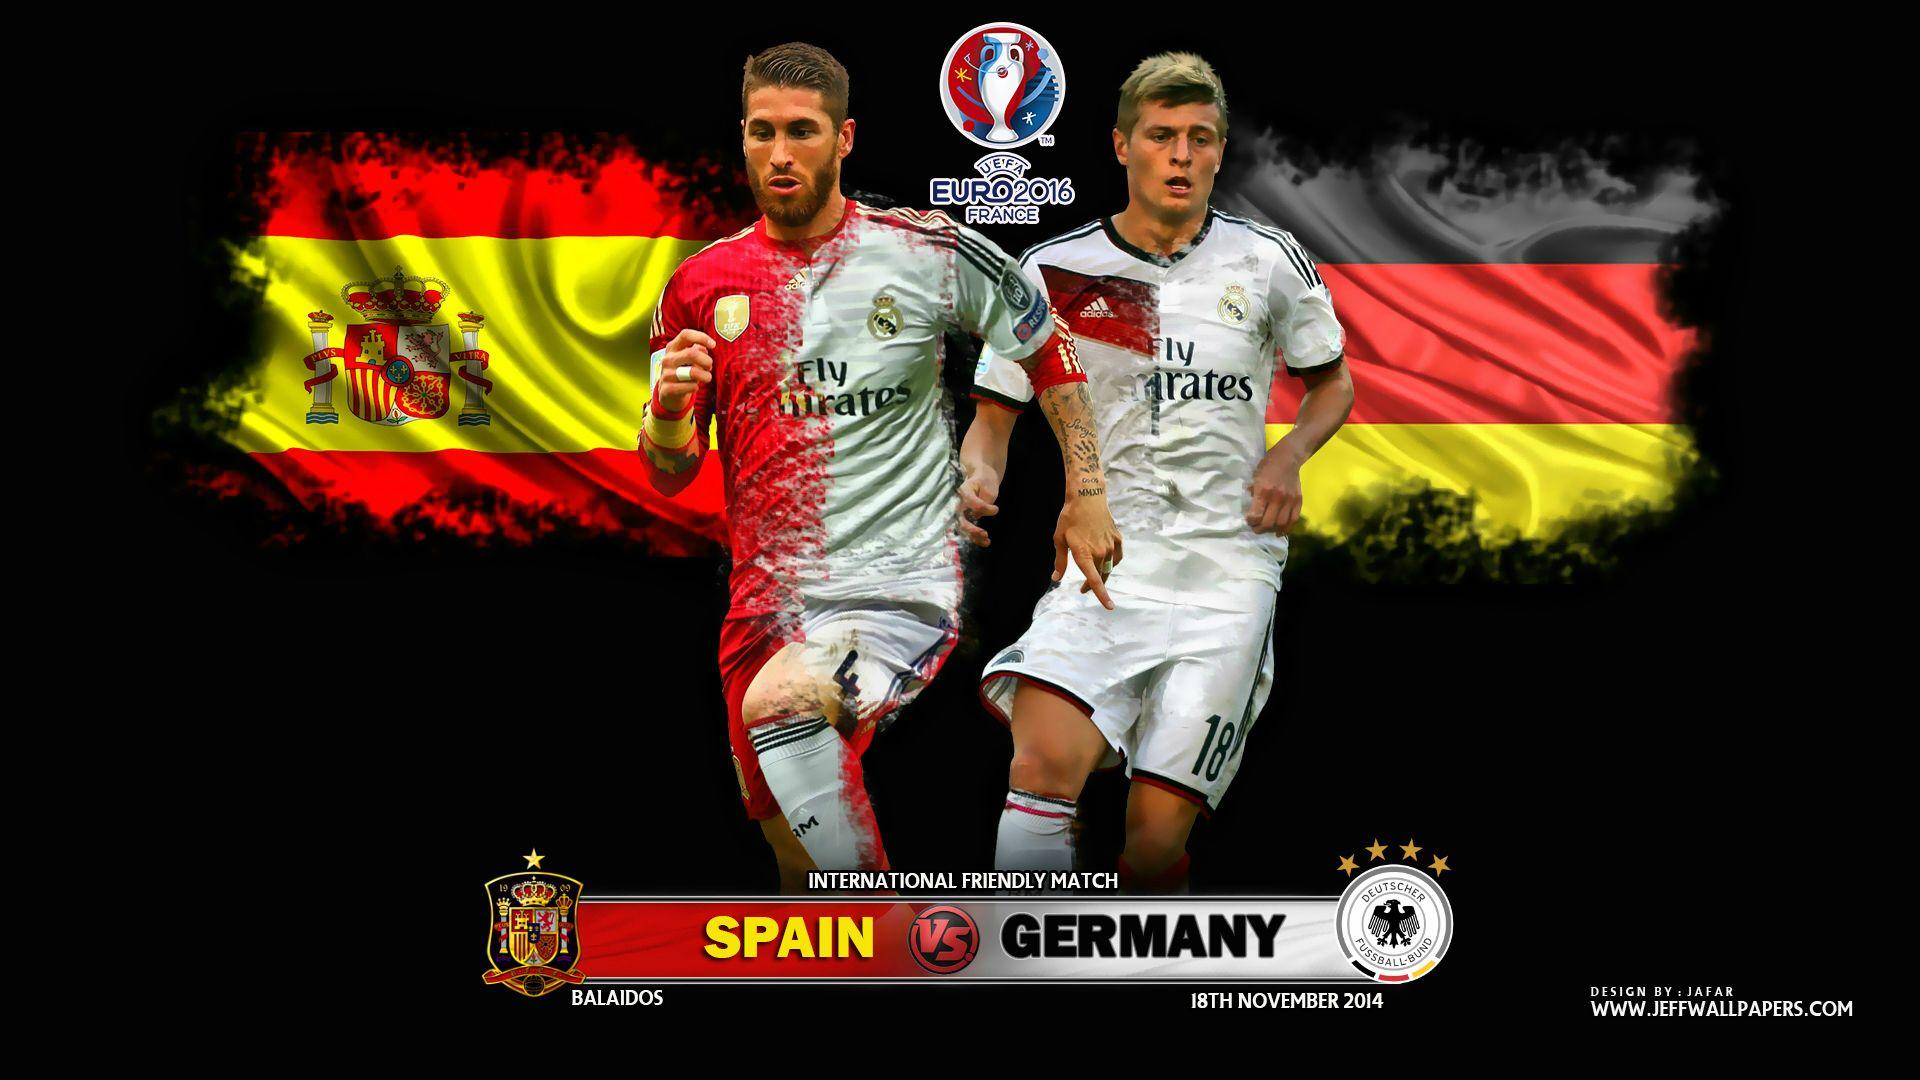 Spain vs Germany 2014 Football Friendly Match Wallpaper free desktop